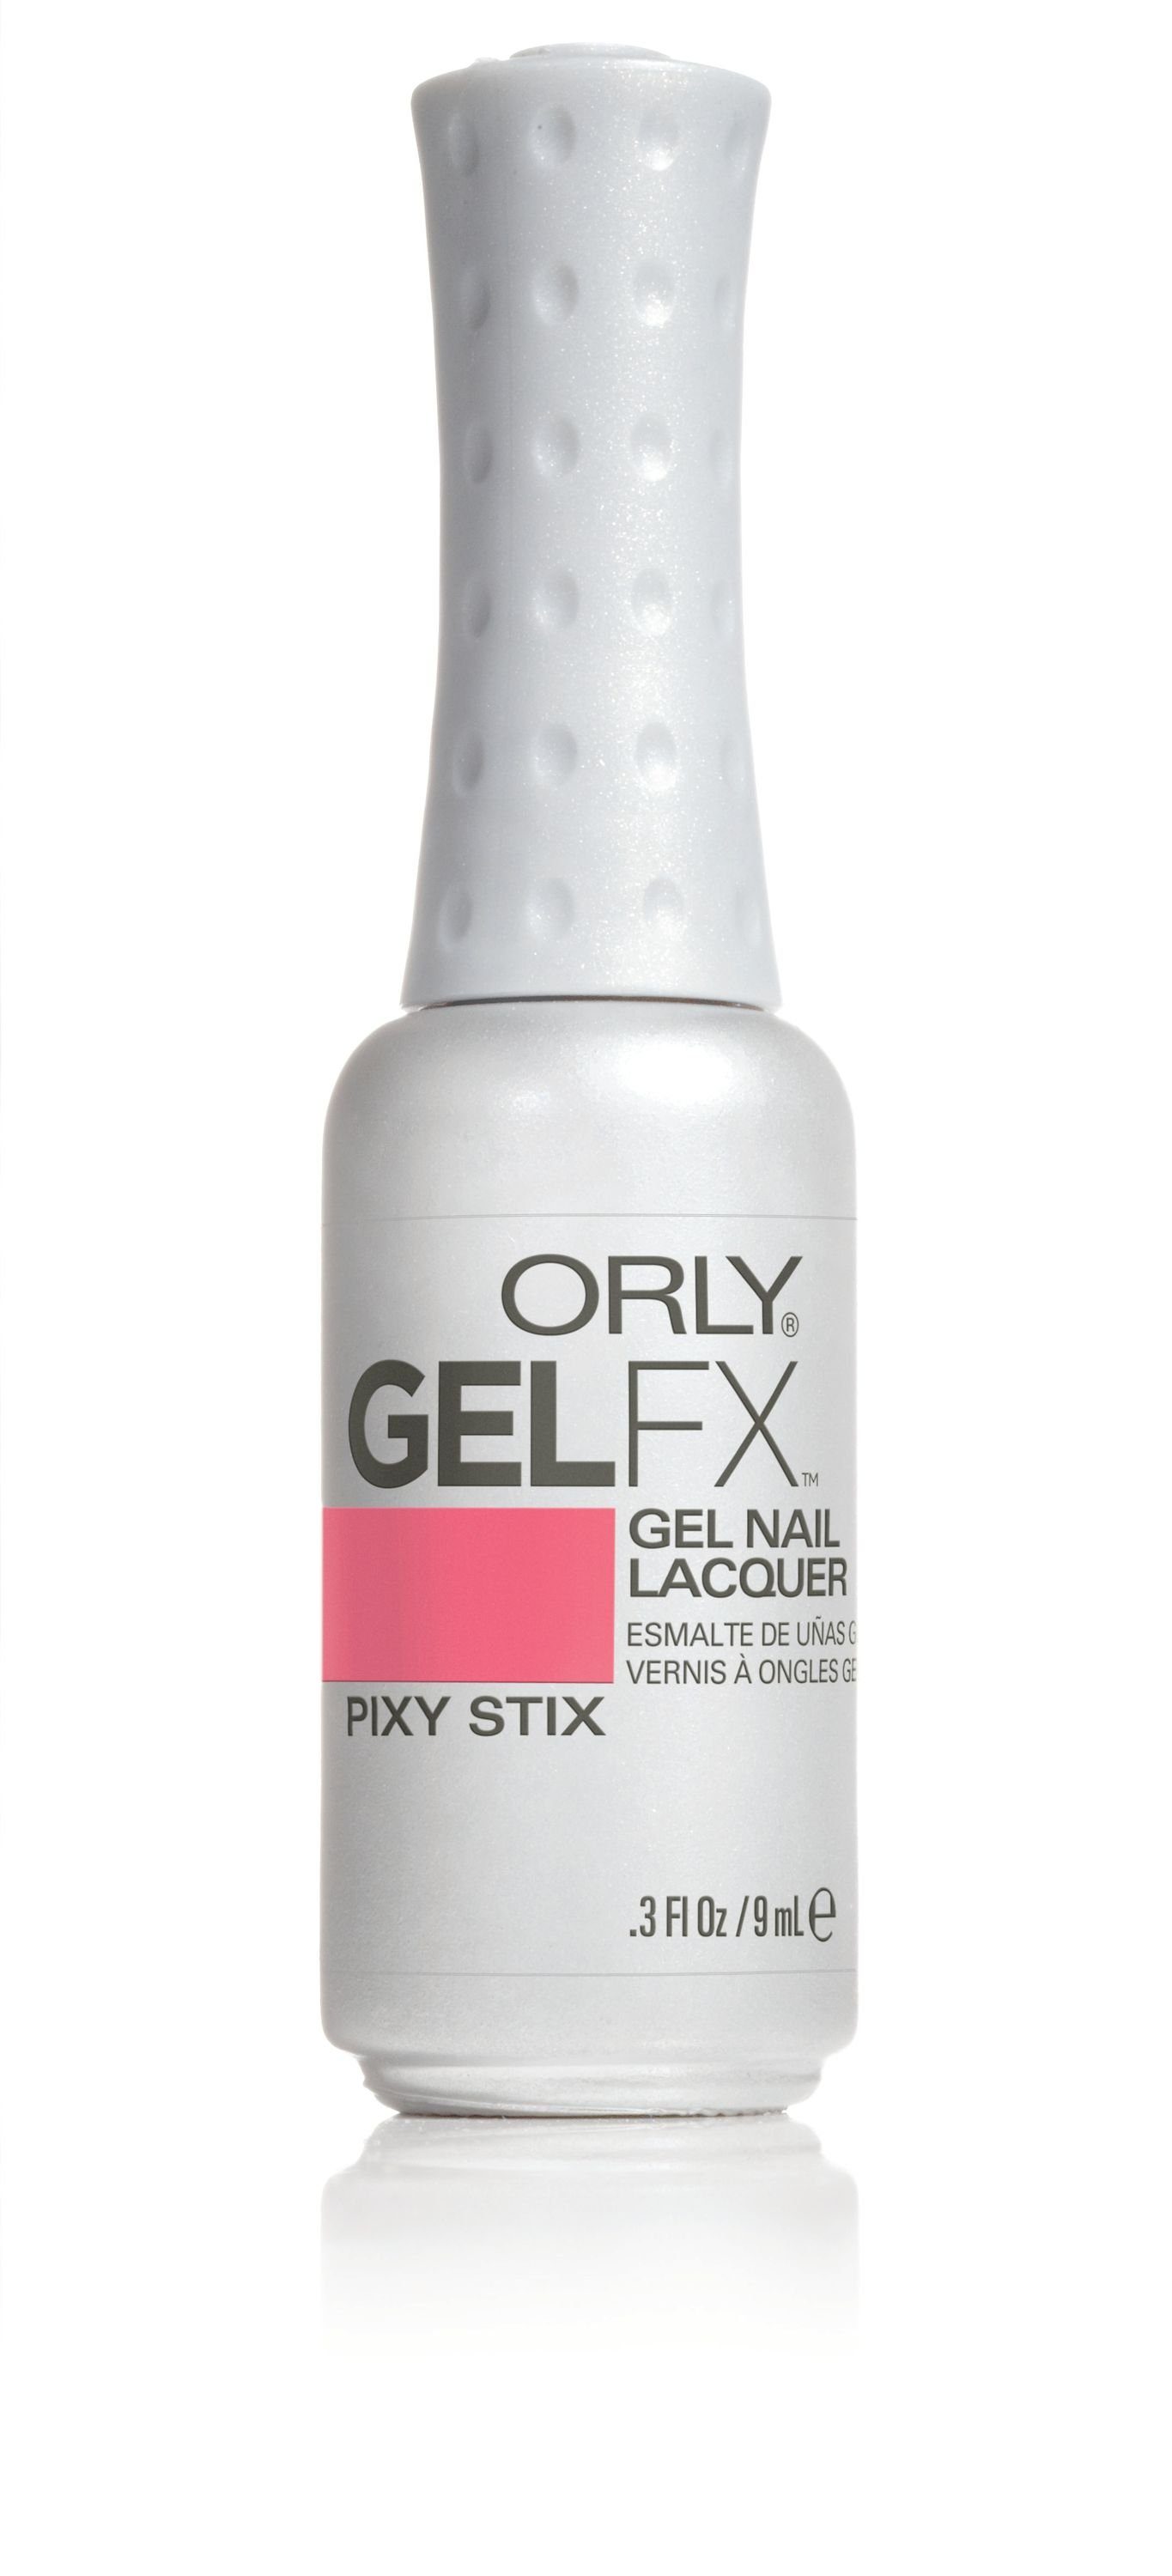 ORLY UV-Nagellack GEL FX Pixy Stix, 9ML | Nagellacke